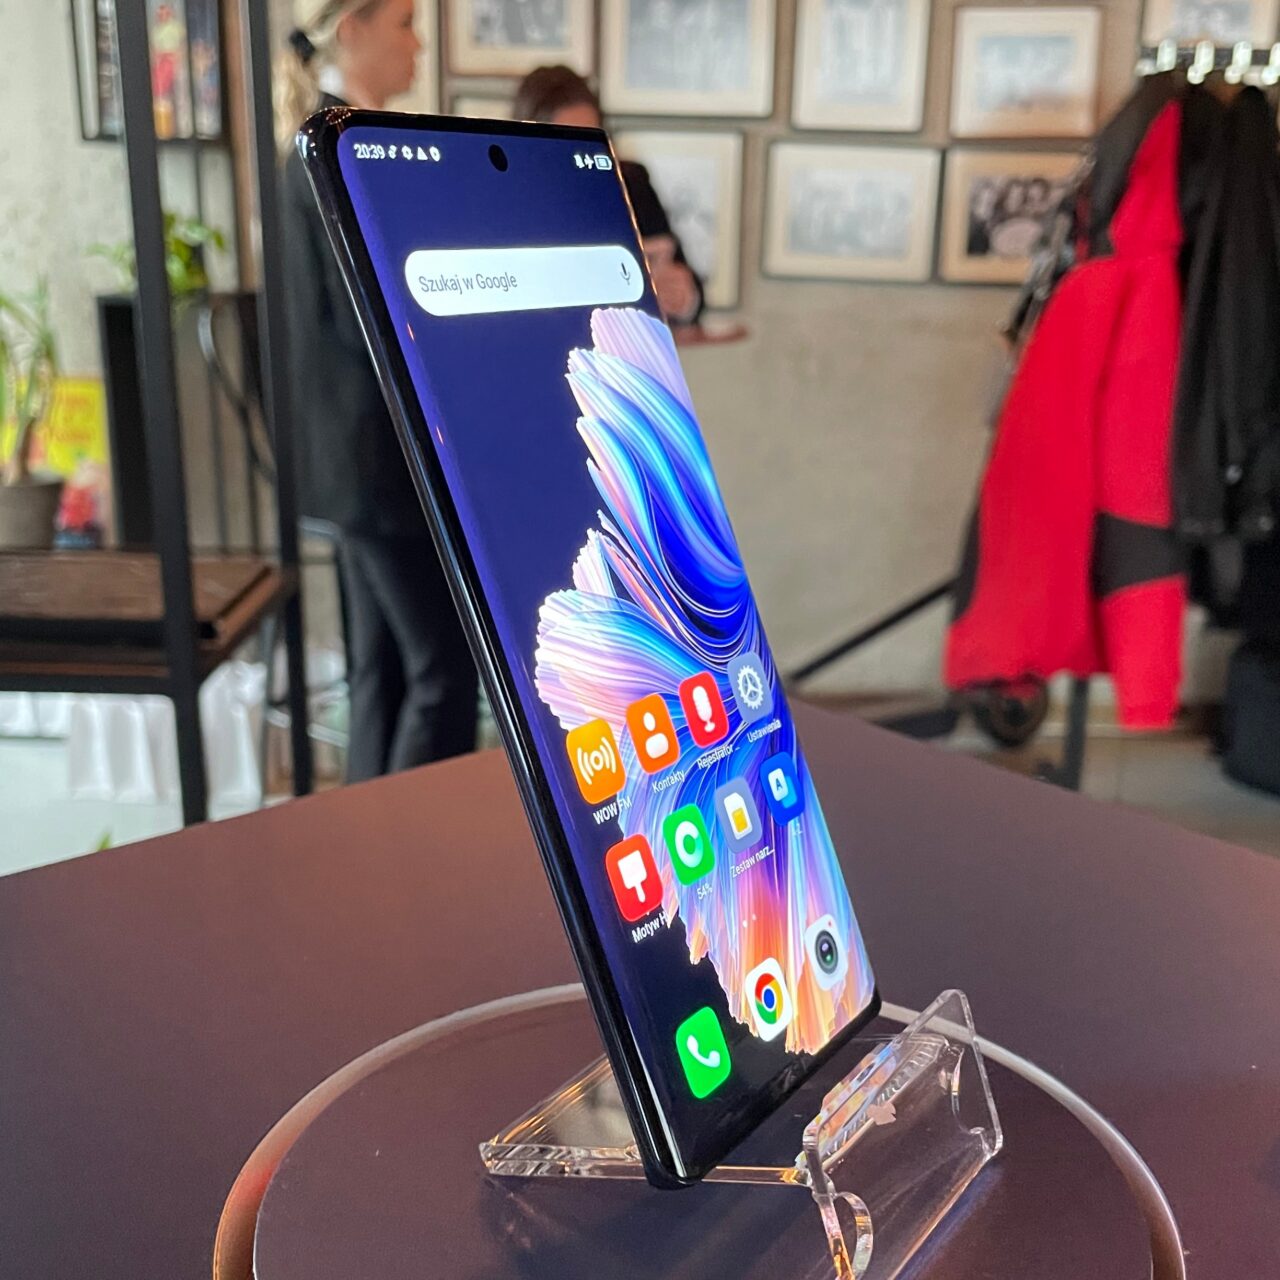 Smartfon tecno spark 20 pro plus umieszczony na przezroczystym stojaku z widocznym wyświetlaczem pokazującym kolorową tapetę i ikony aplikacji, na tle rozmytego wnętrza.